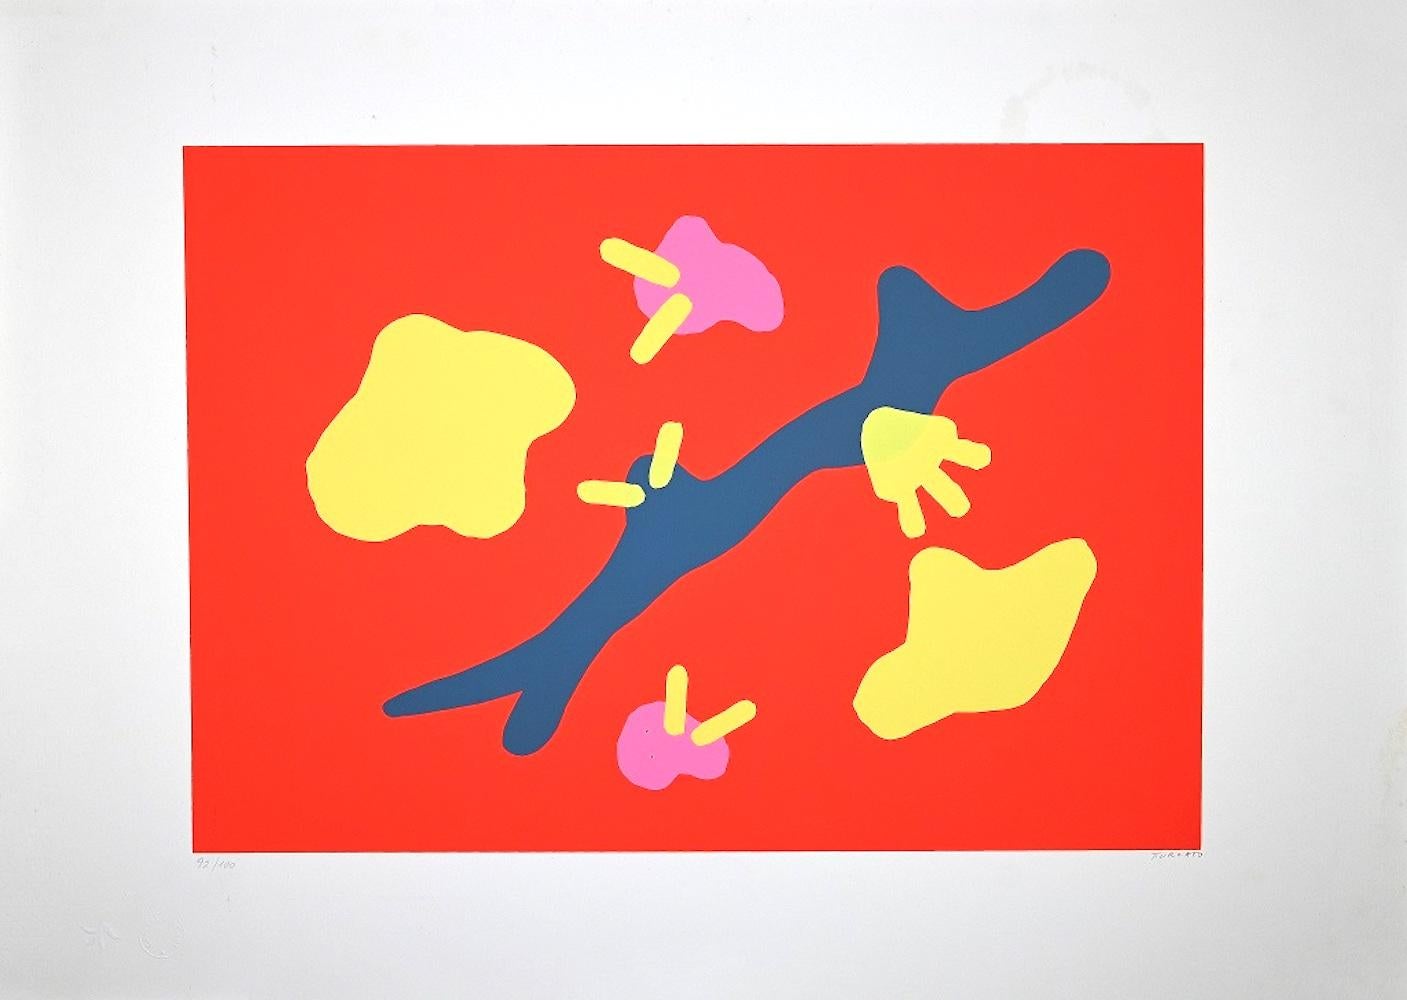 Composition en rouge  est une sérigraphie colorée réalisée par l'artiste contemporain Giulio Turcato.

Signé à la main au crayon en bas à droite.

Numéroté dans la marge inférieure gauche, édition de 100 exemplaires.

Giulio Turcato (1912 - 1995)